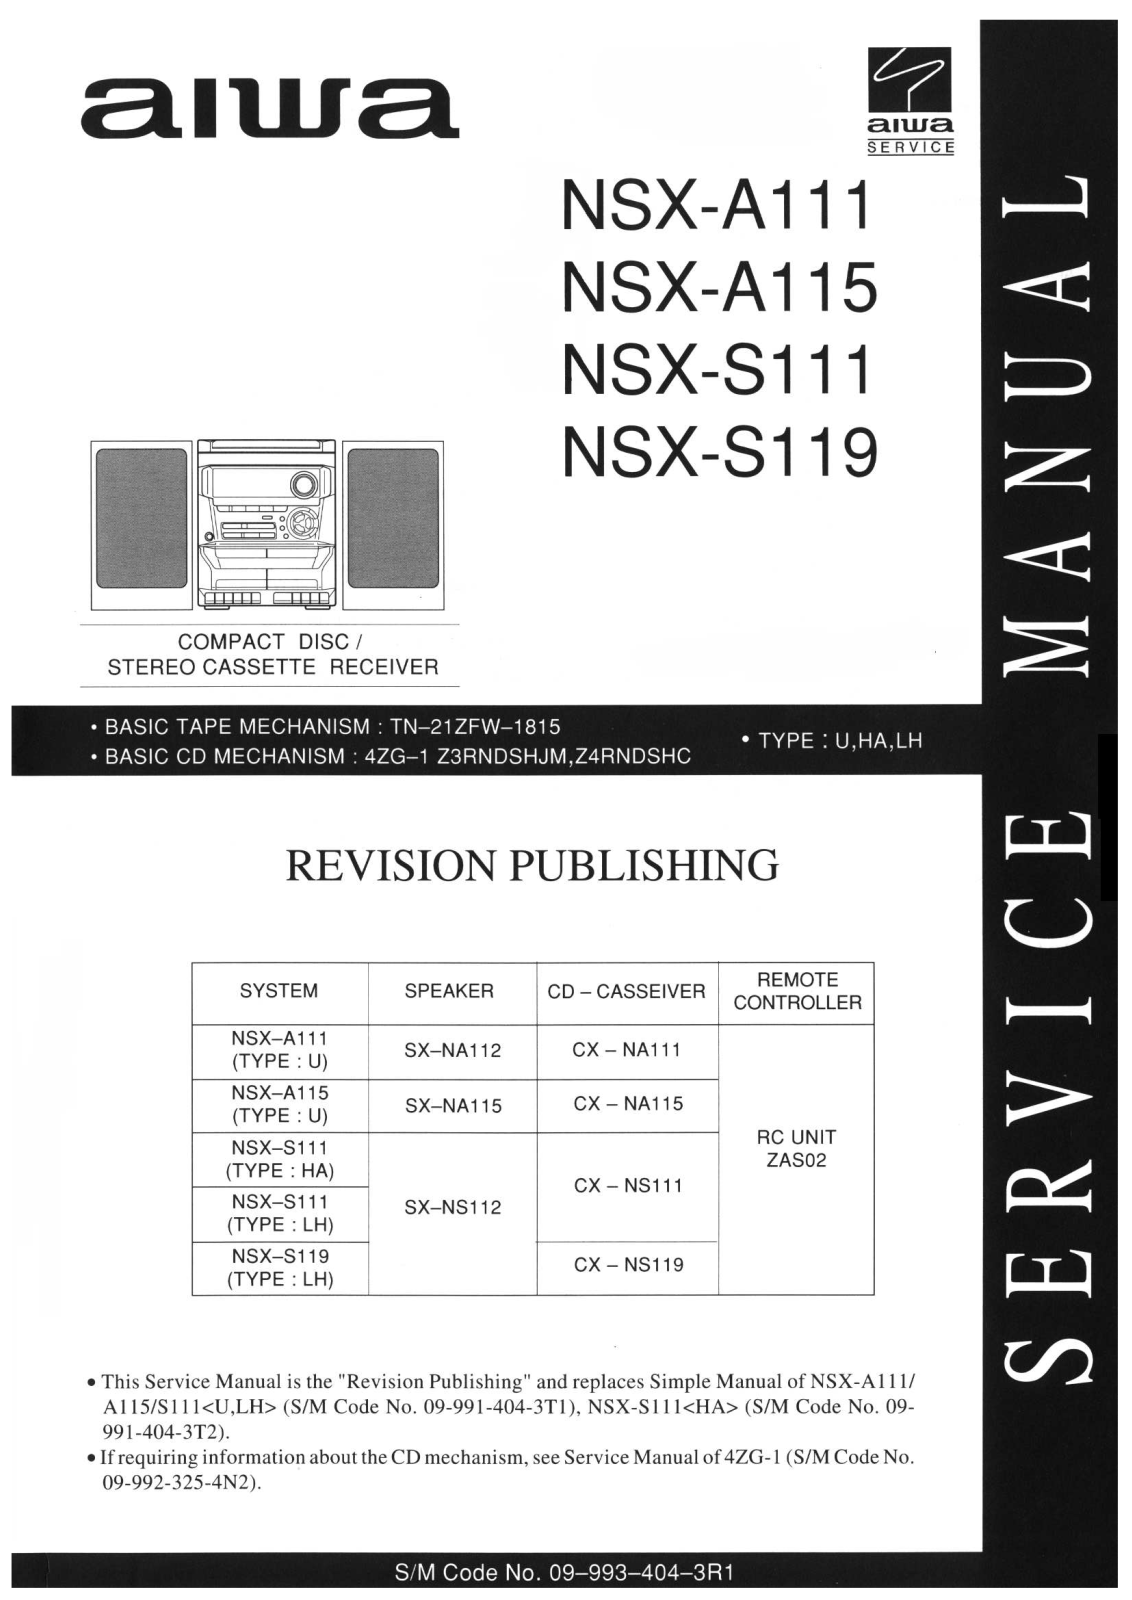 Aiwa NSX A111, NSX- A115, NSX- S111, NSX- S119 Service Manual